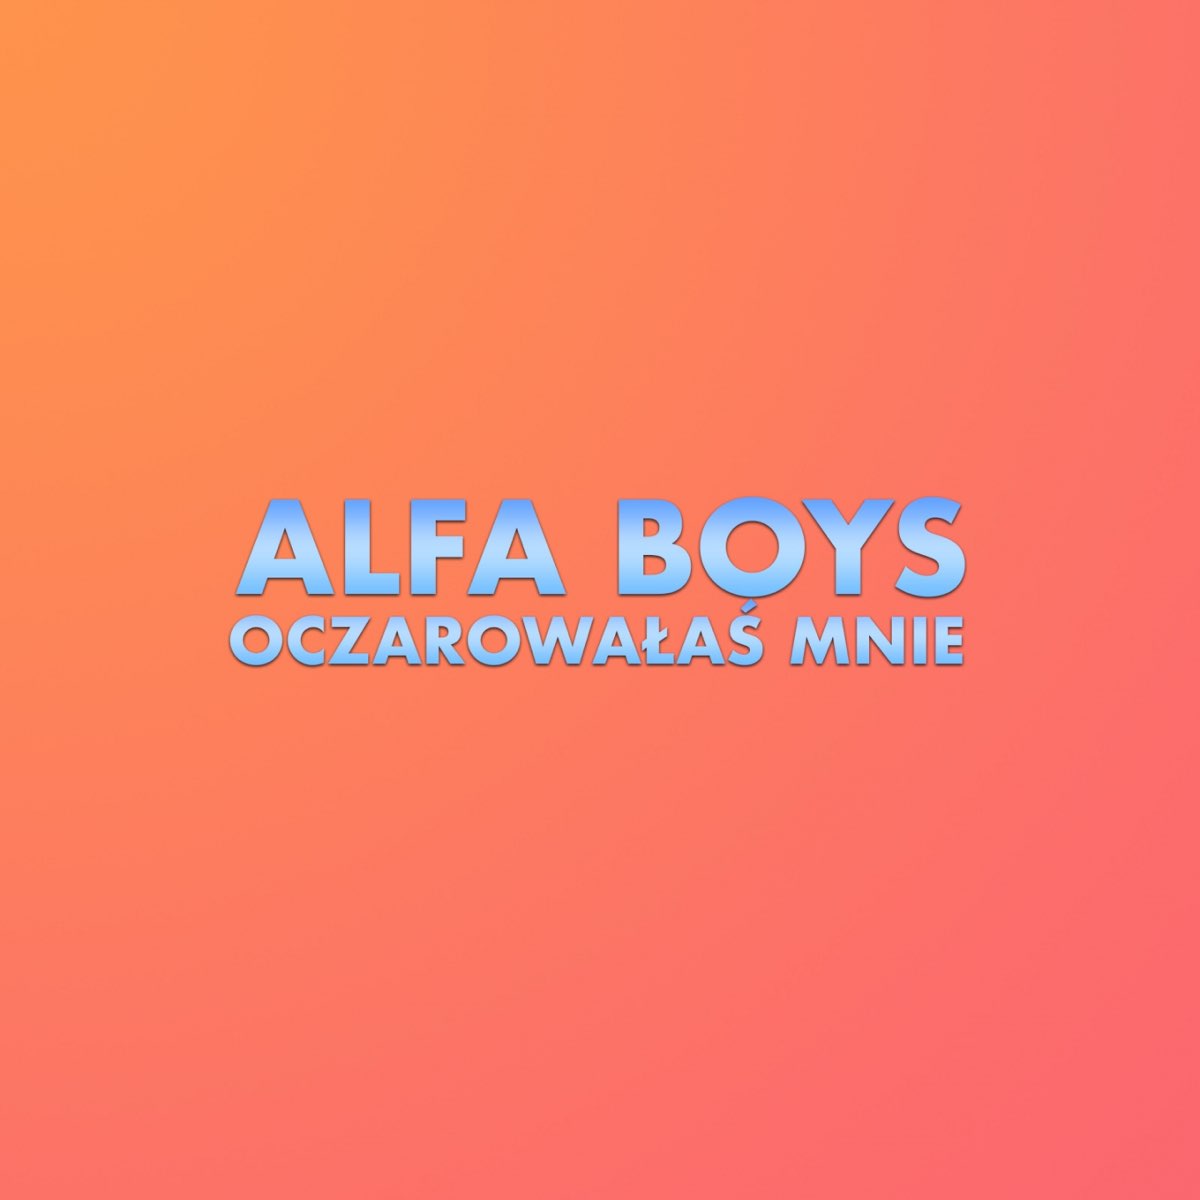 Oczarowałaś mnie - Single by Alfa Boys on Apple Music